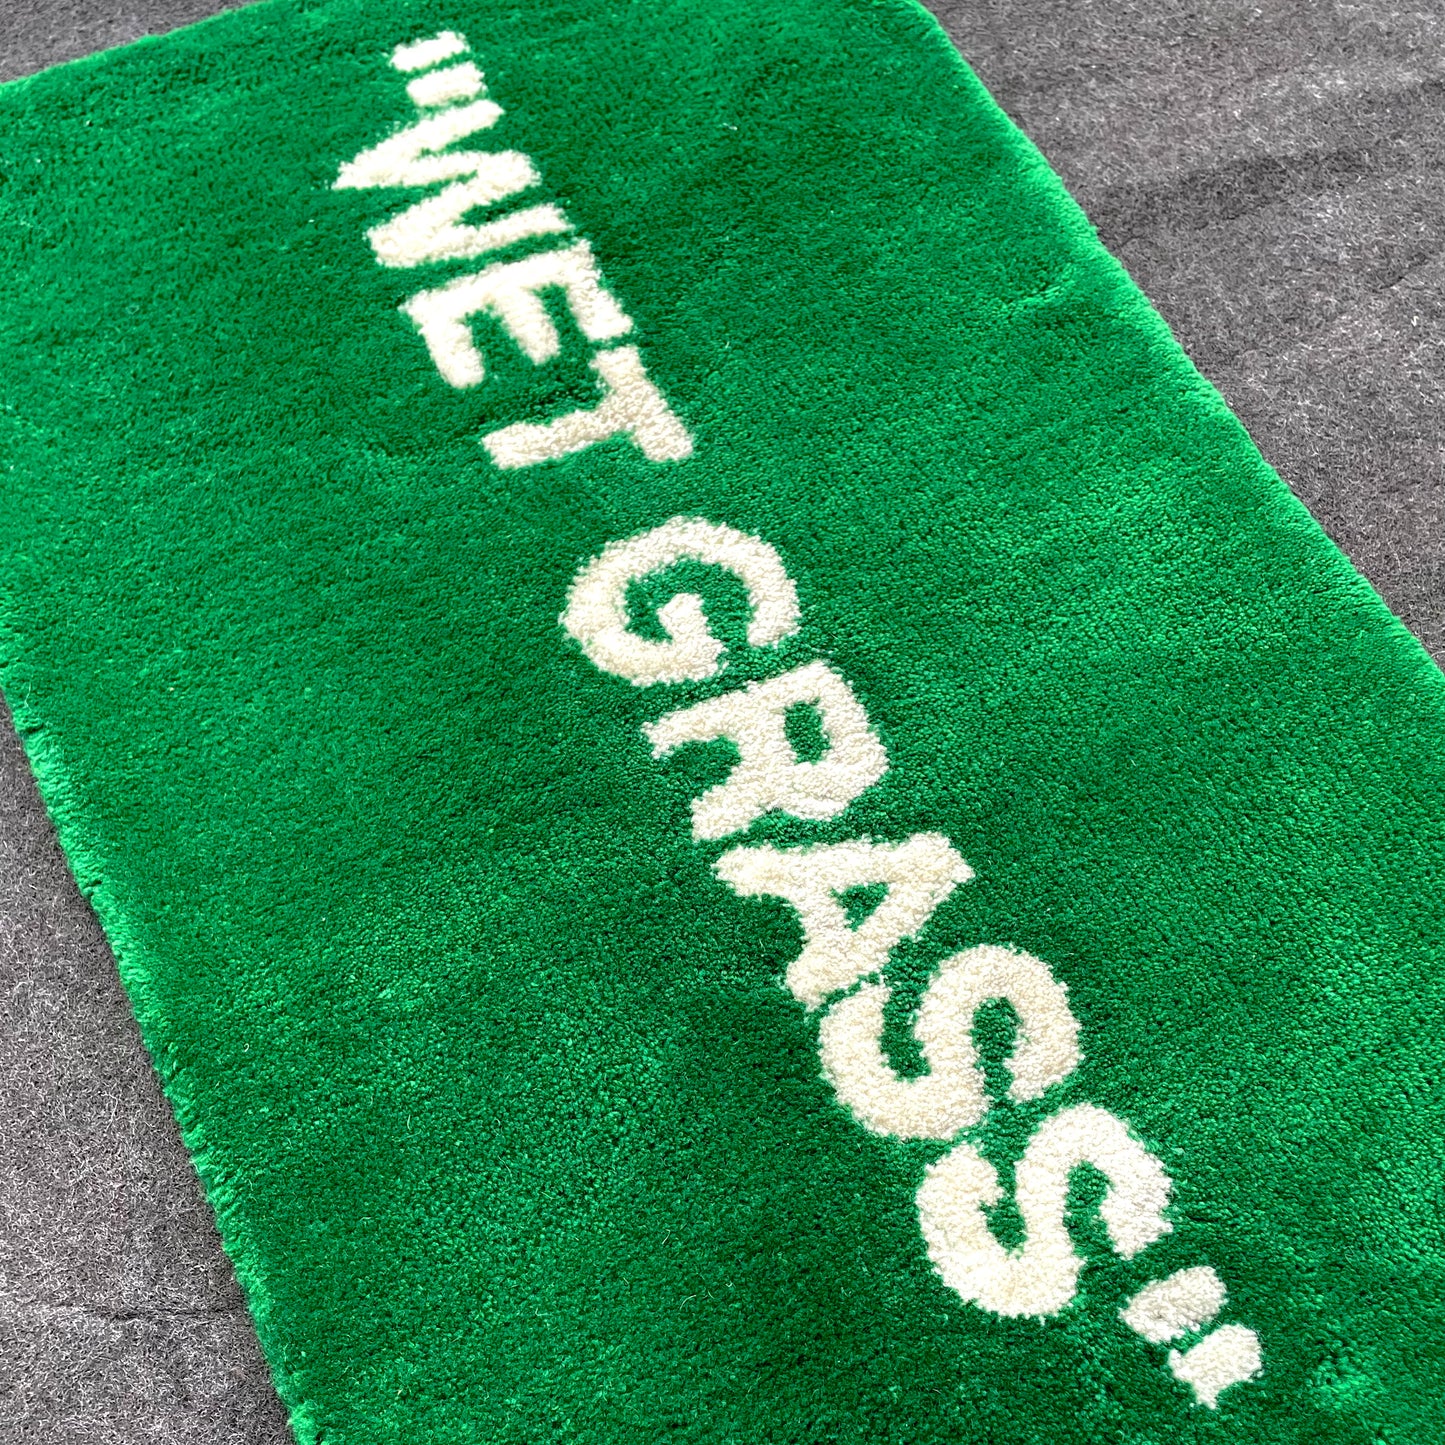 wet grass rug close up